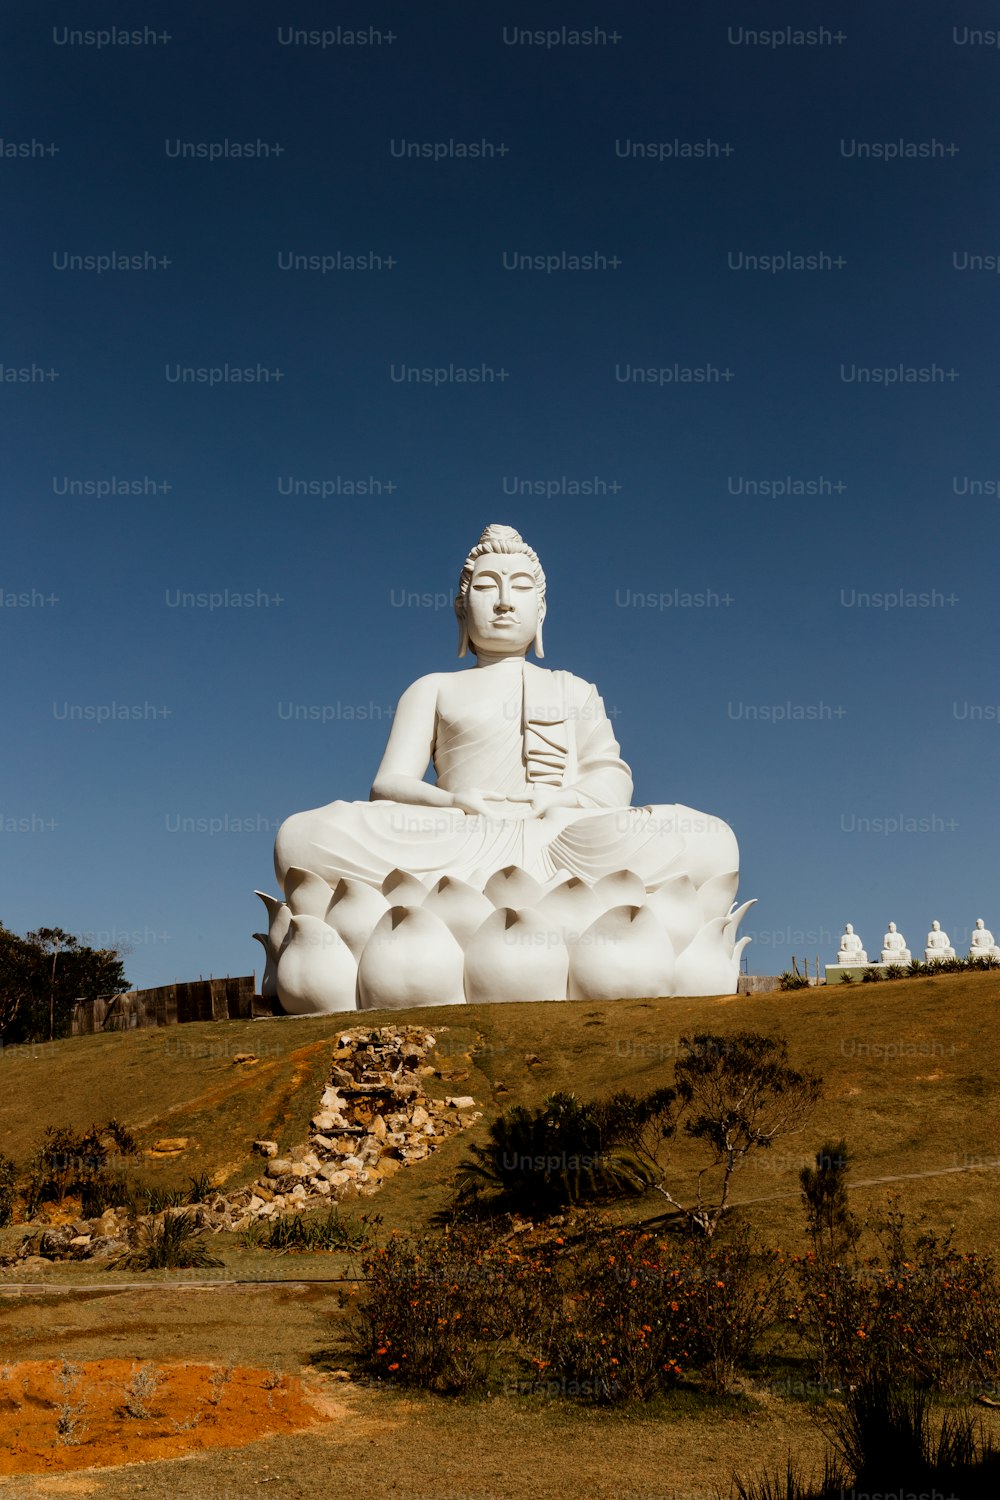 Une grande statue de Bouddha blanc assise au sommet d’une colline